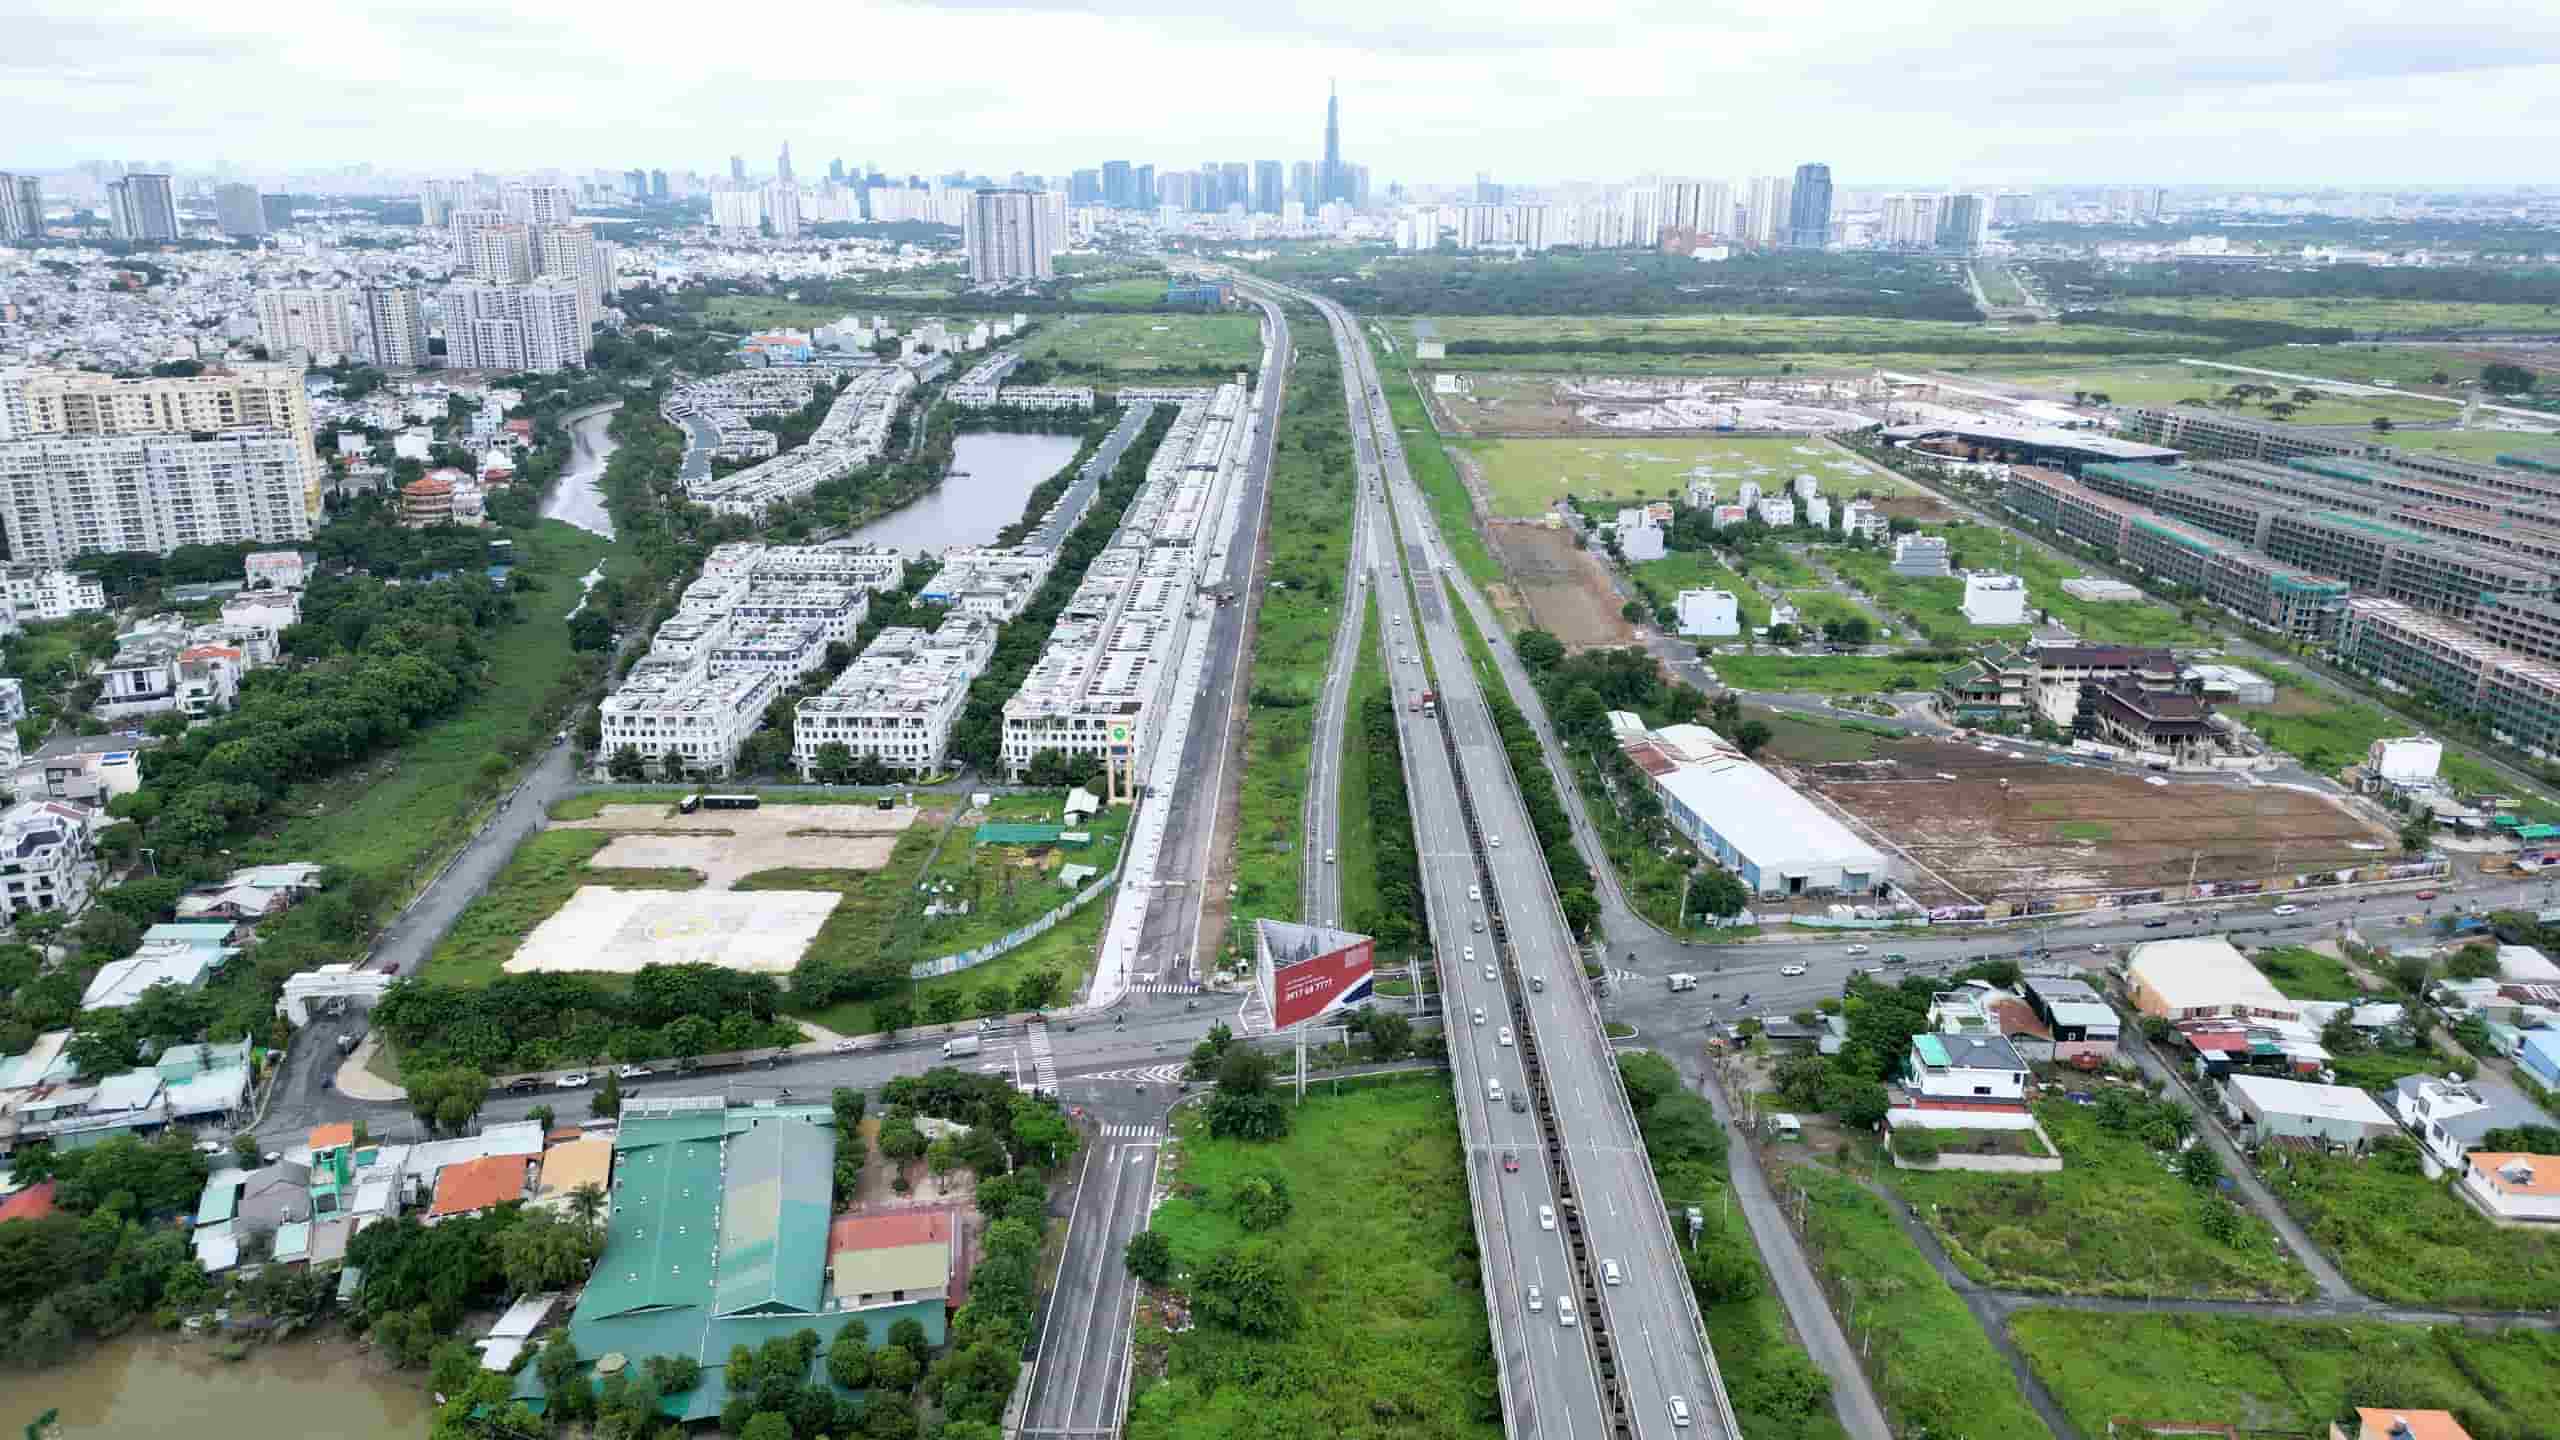 Đường song hành cao tốc TP HCM - Long Thành (ngoài cùng bên trái) khởi công tháng 4/2017 theo hợp đồng BT (xây dựng - chuyển giao), tổng mức đầu tư 869 tỷ đồng, dự kiến hoàn thành sau hai năm. Tuy nhiên, dự án bị vướng mặt bằng cũng như thủ tục thanh toán theo hợp đồng BT nên chậm tiến độ.